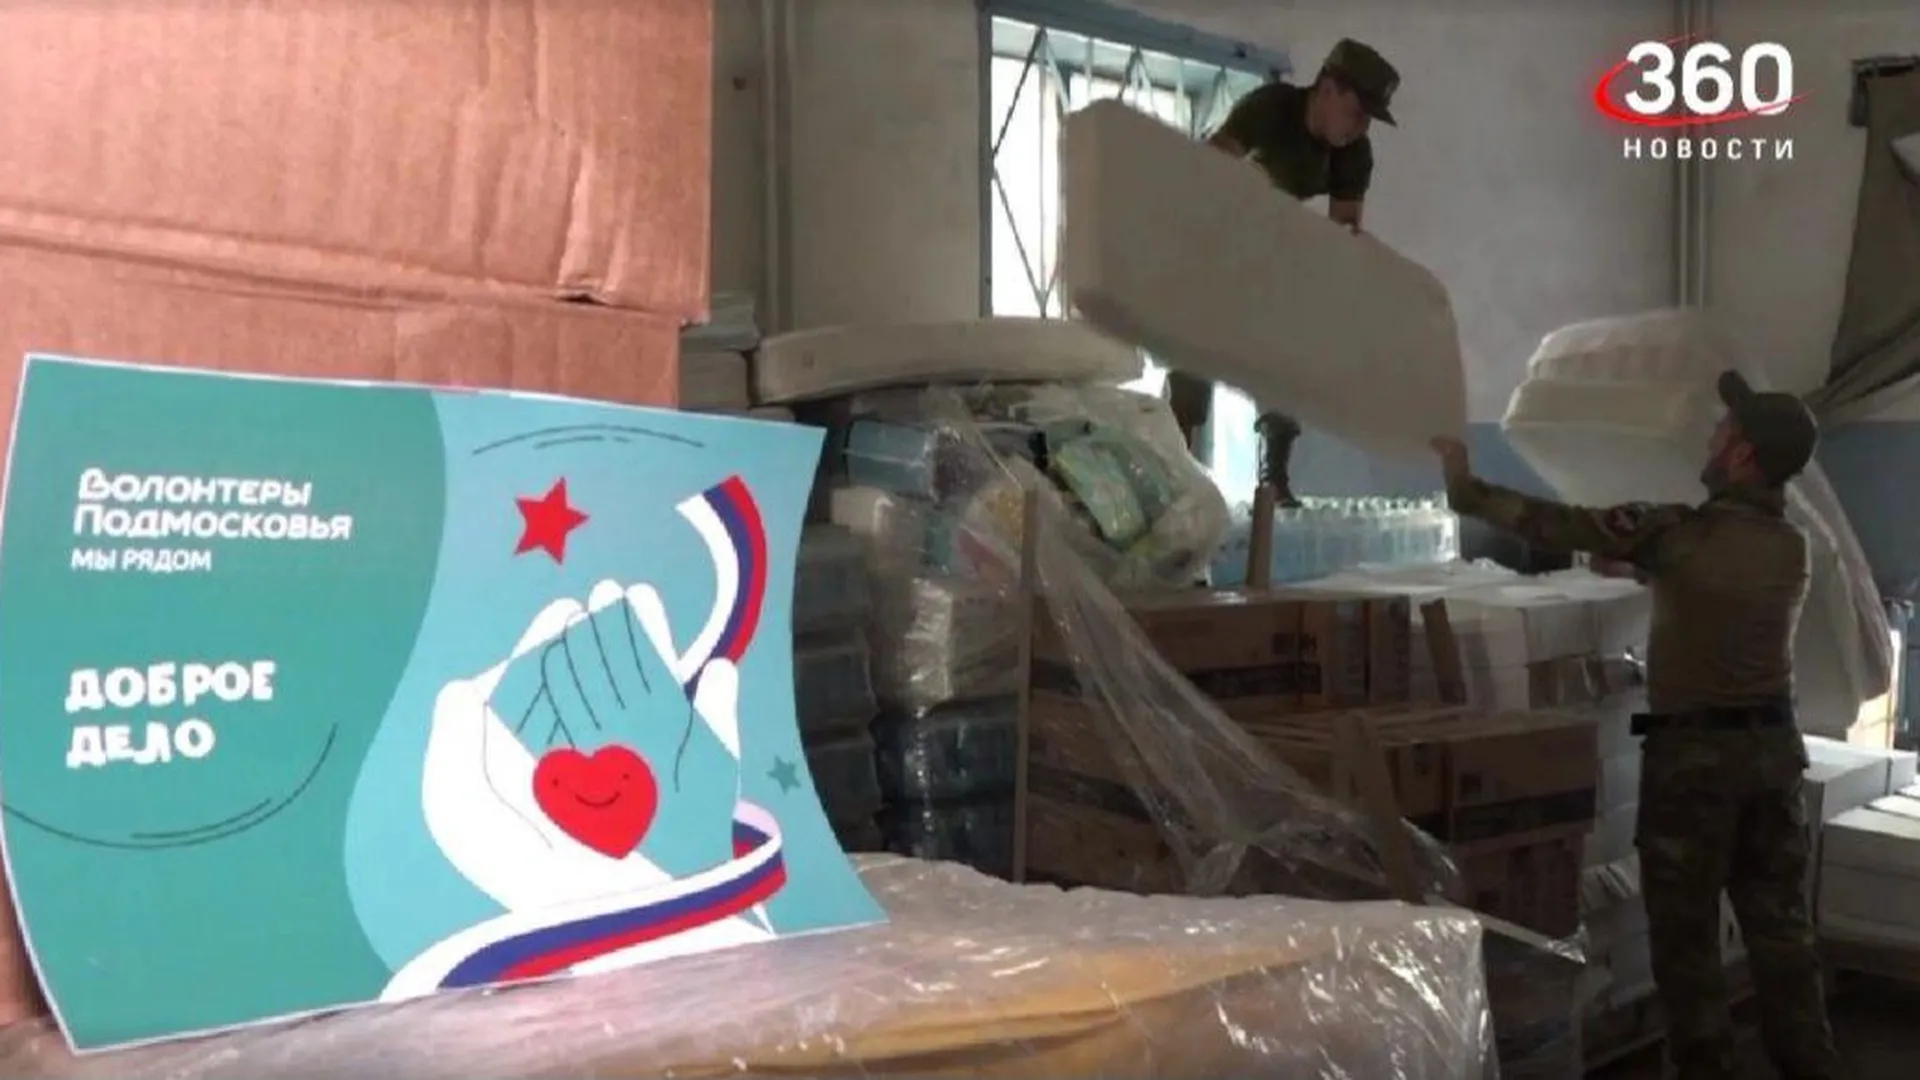 Подмосковные волонтеры привезли гуманитарную помощь в госпиталь, храм и детский дом в ДНР